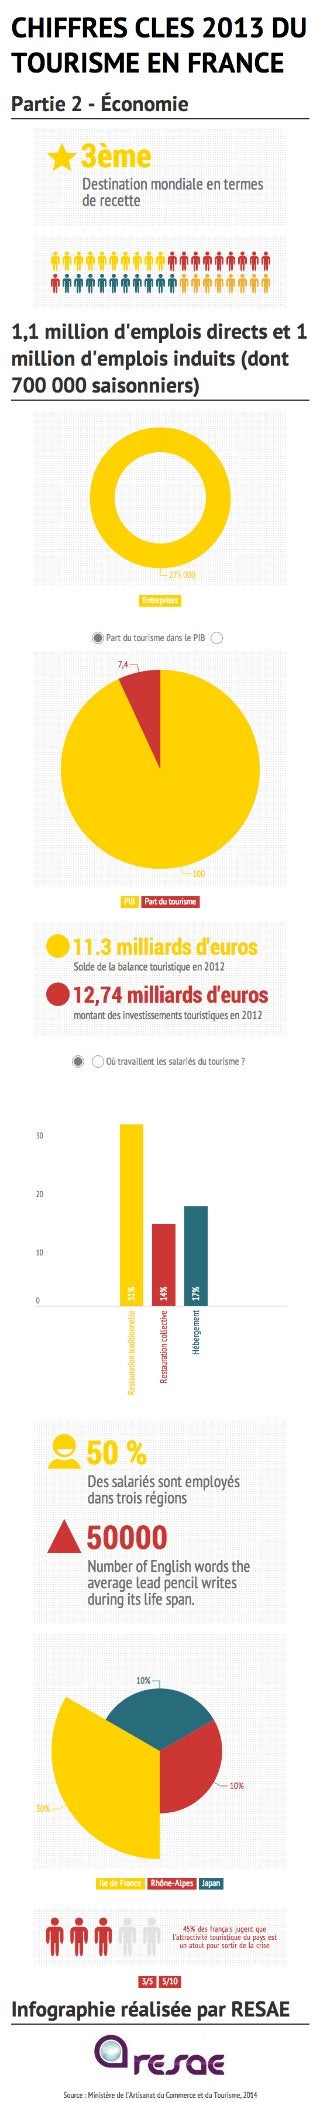 [Infographie] Chiffres clés du tourisme français en 2013 - Partie 2 : Économie